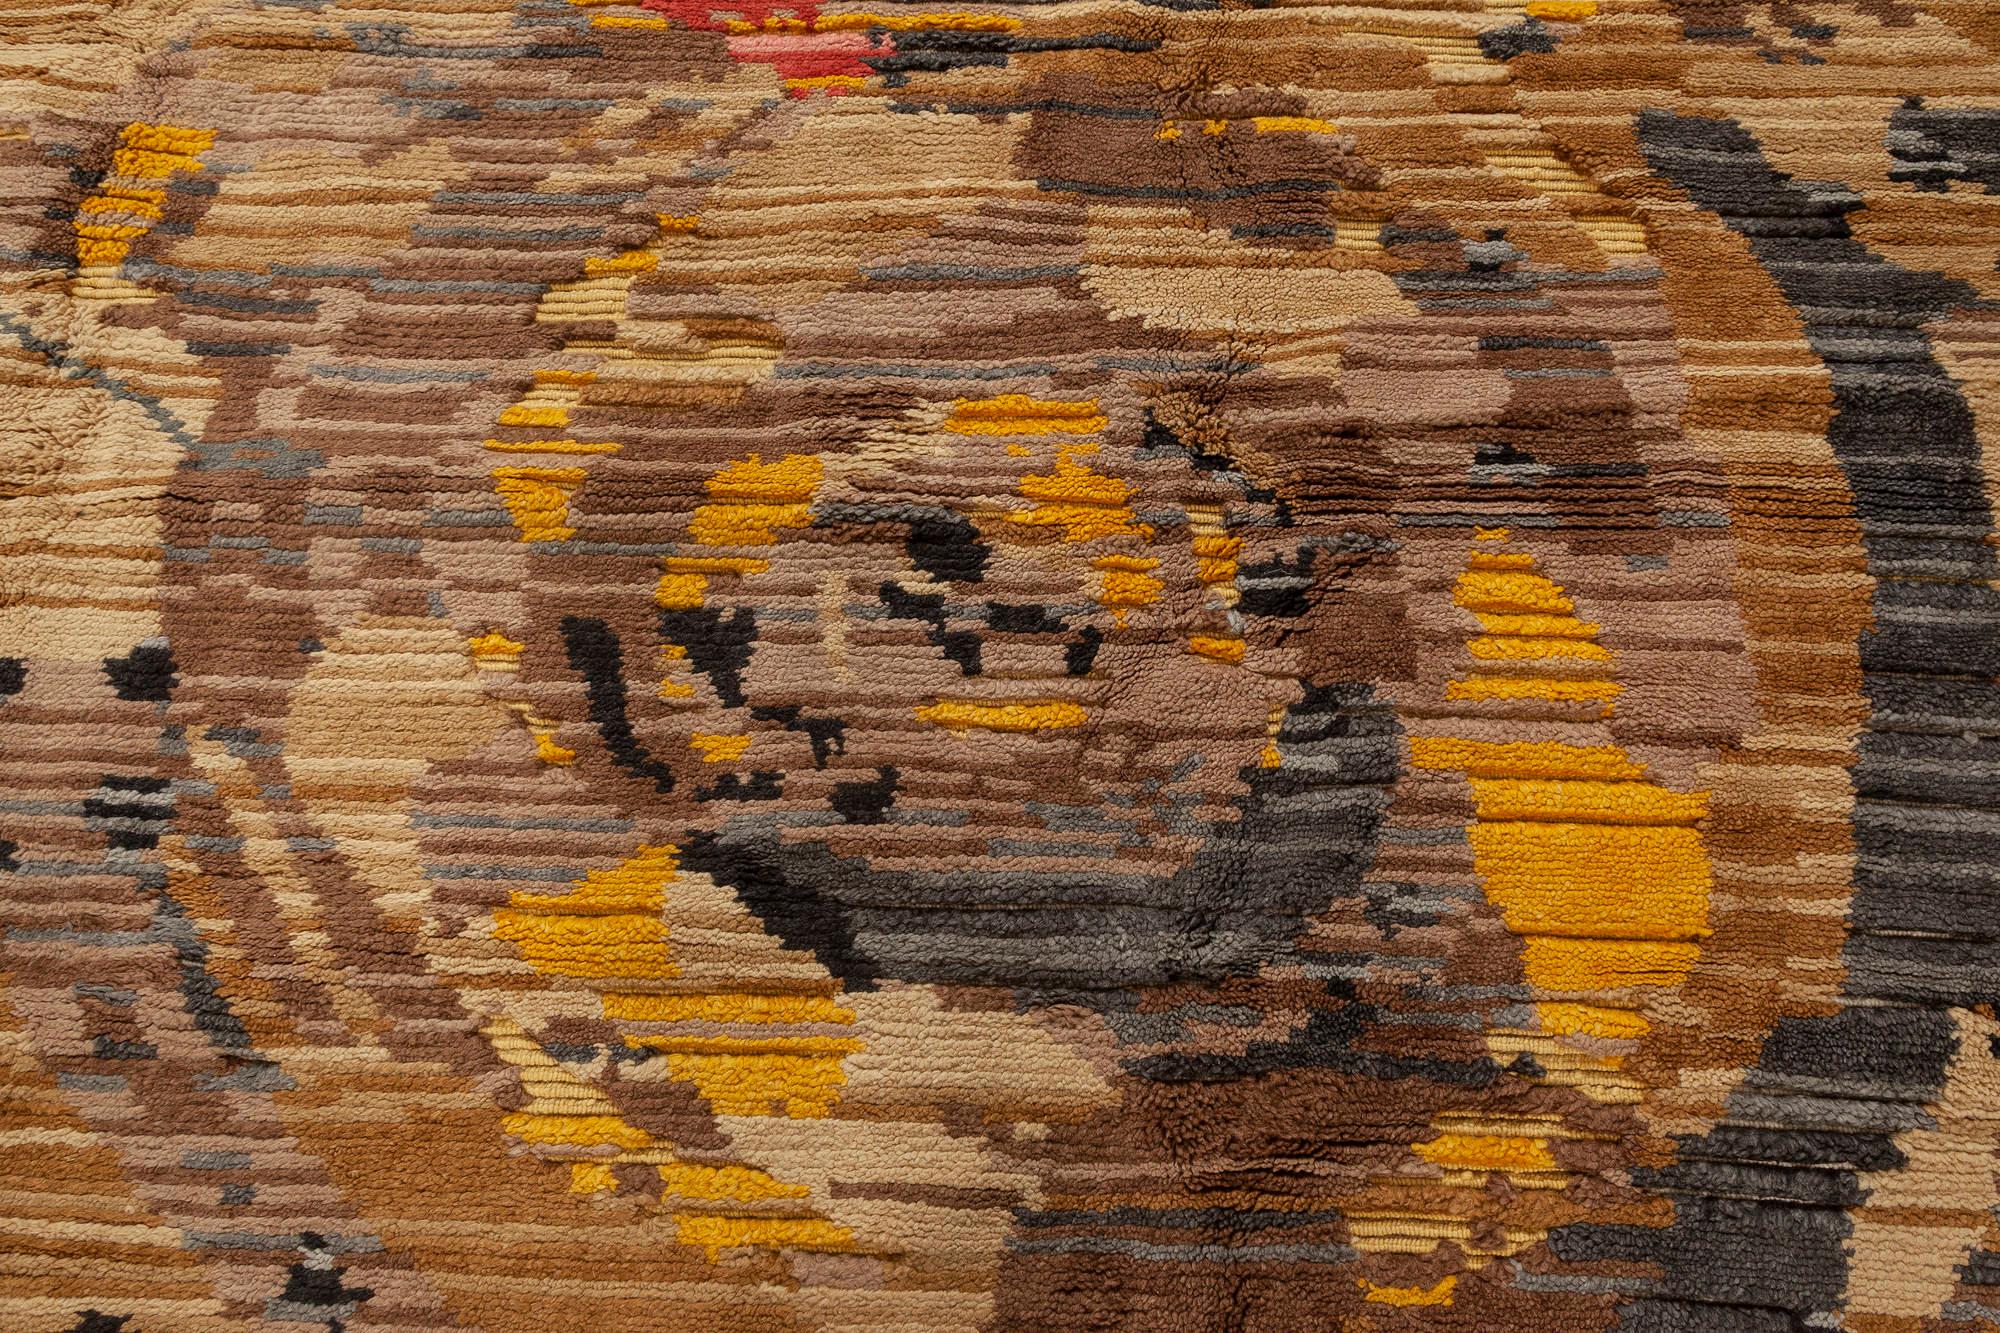 Zeitgenössischer handgeknüpfter Jardin-Teppich von Doris Leslie Blau.
Größe: 12'0